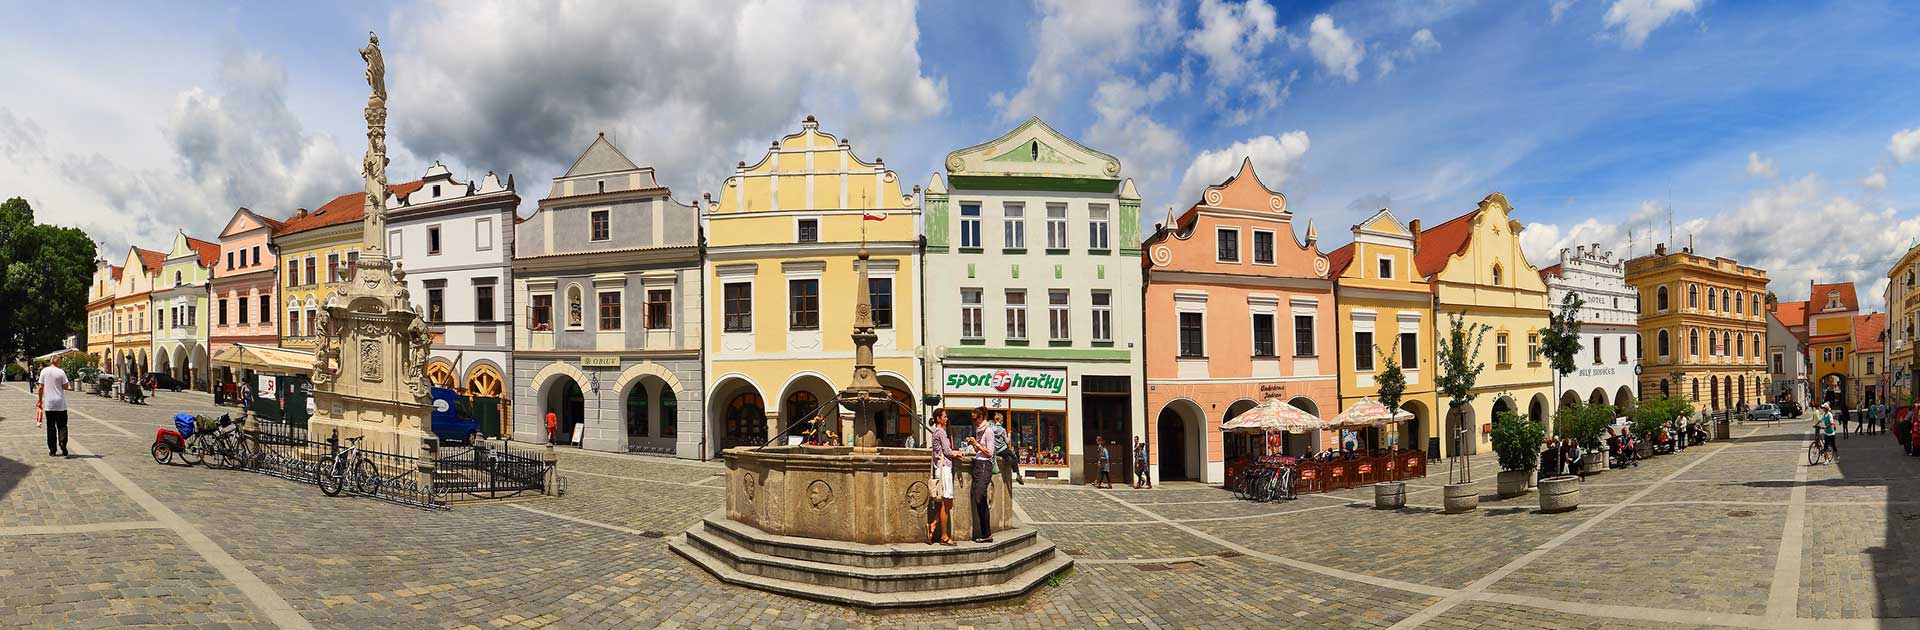 Třeboň - náměstí, panoramatický pohled, foto: Libor Sváček